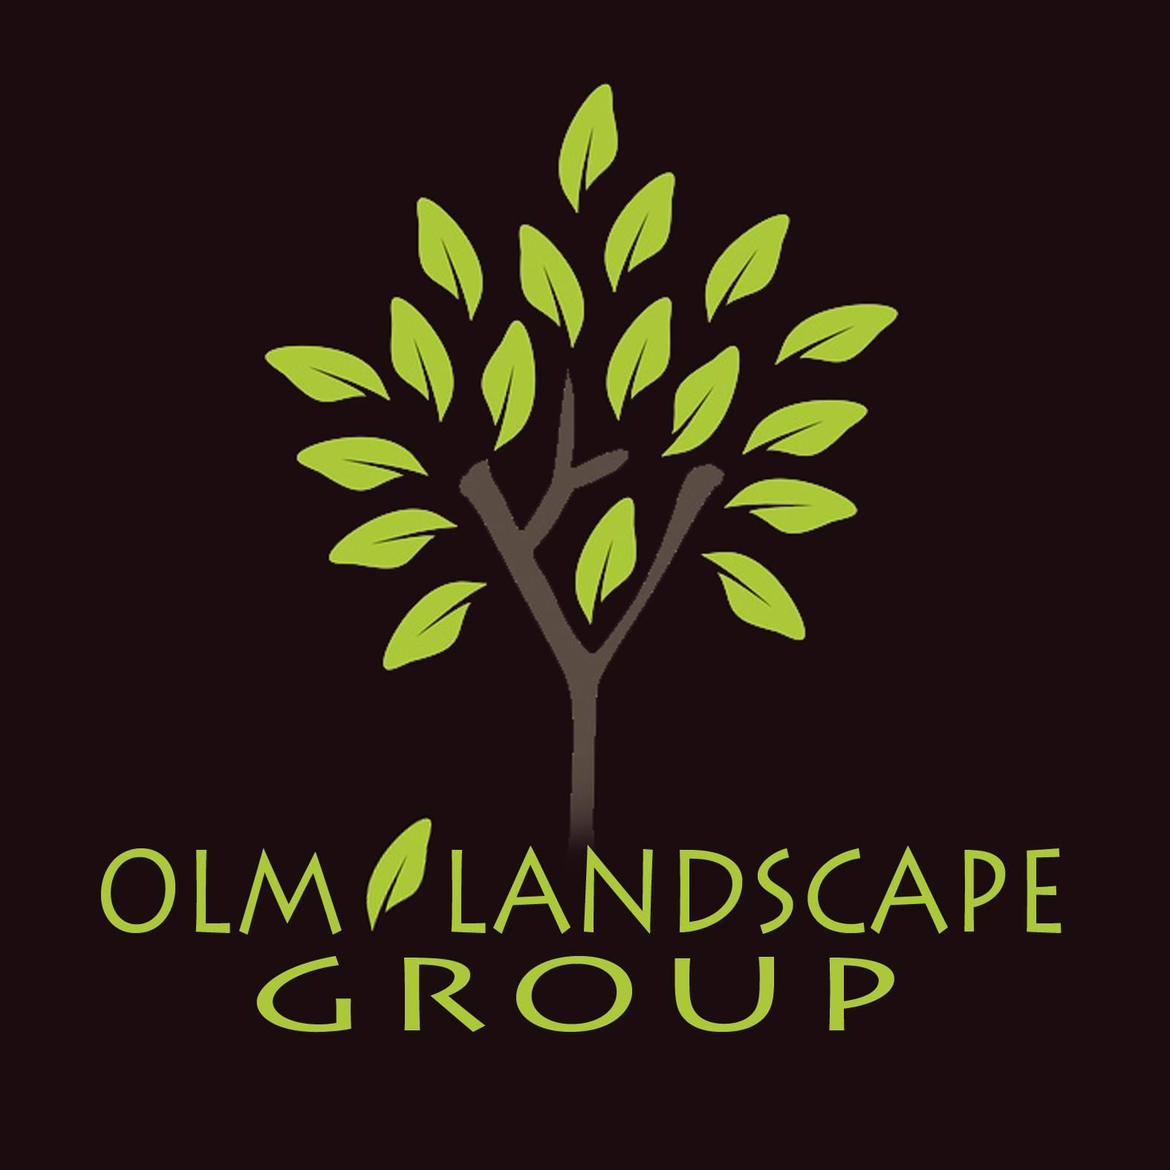 OLM Landscape's images